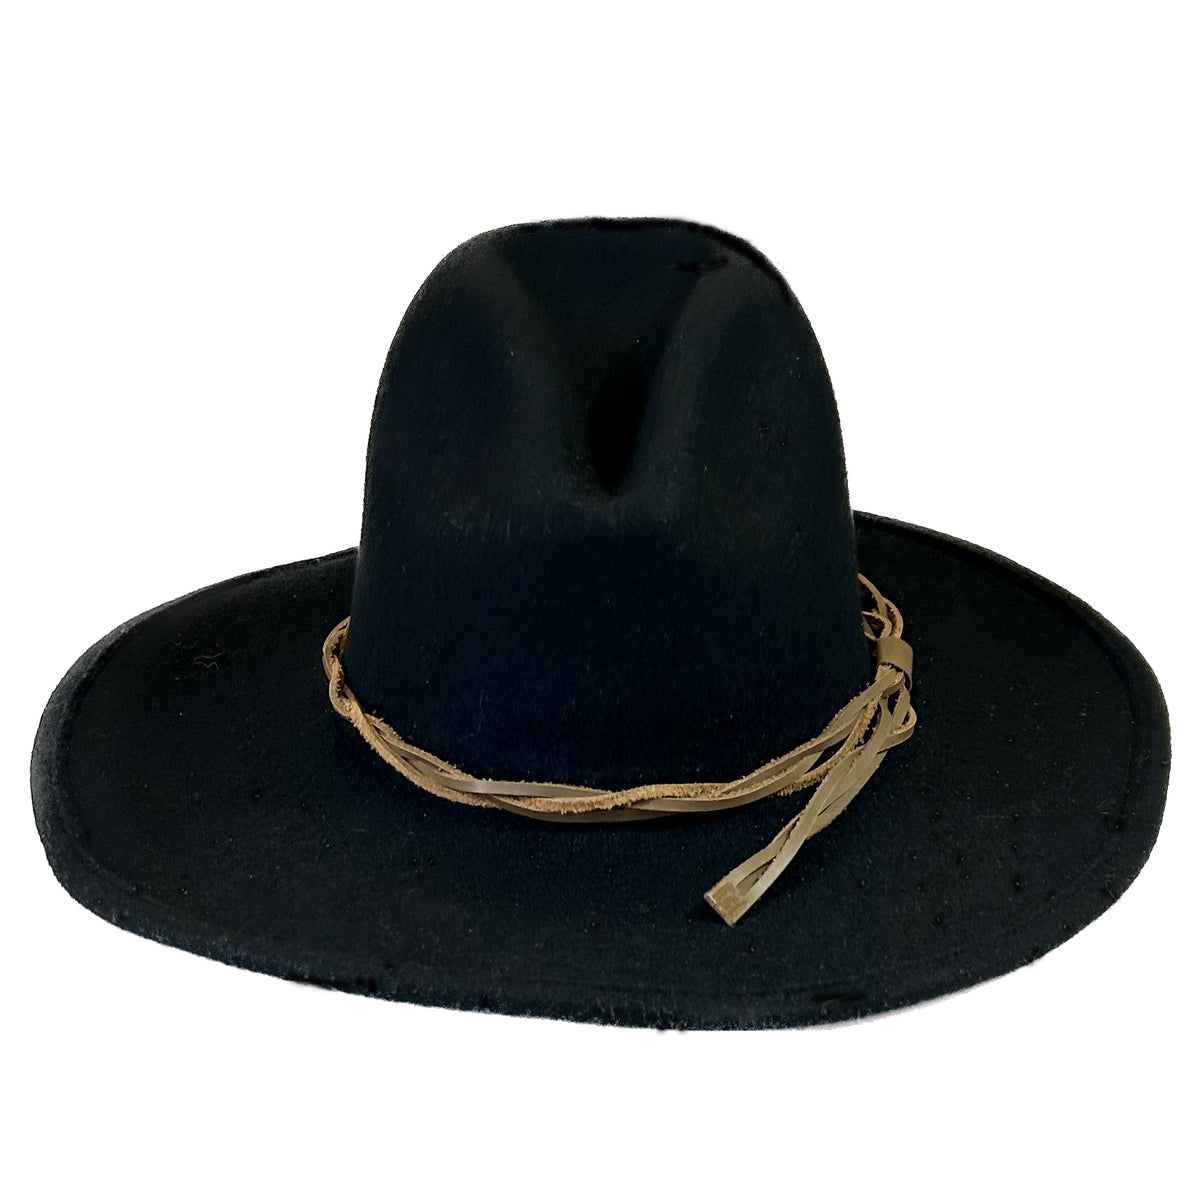 Rockmount Lonesome Gus Brown Premium 100% Wool Western Cowboy Hat